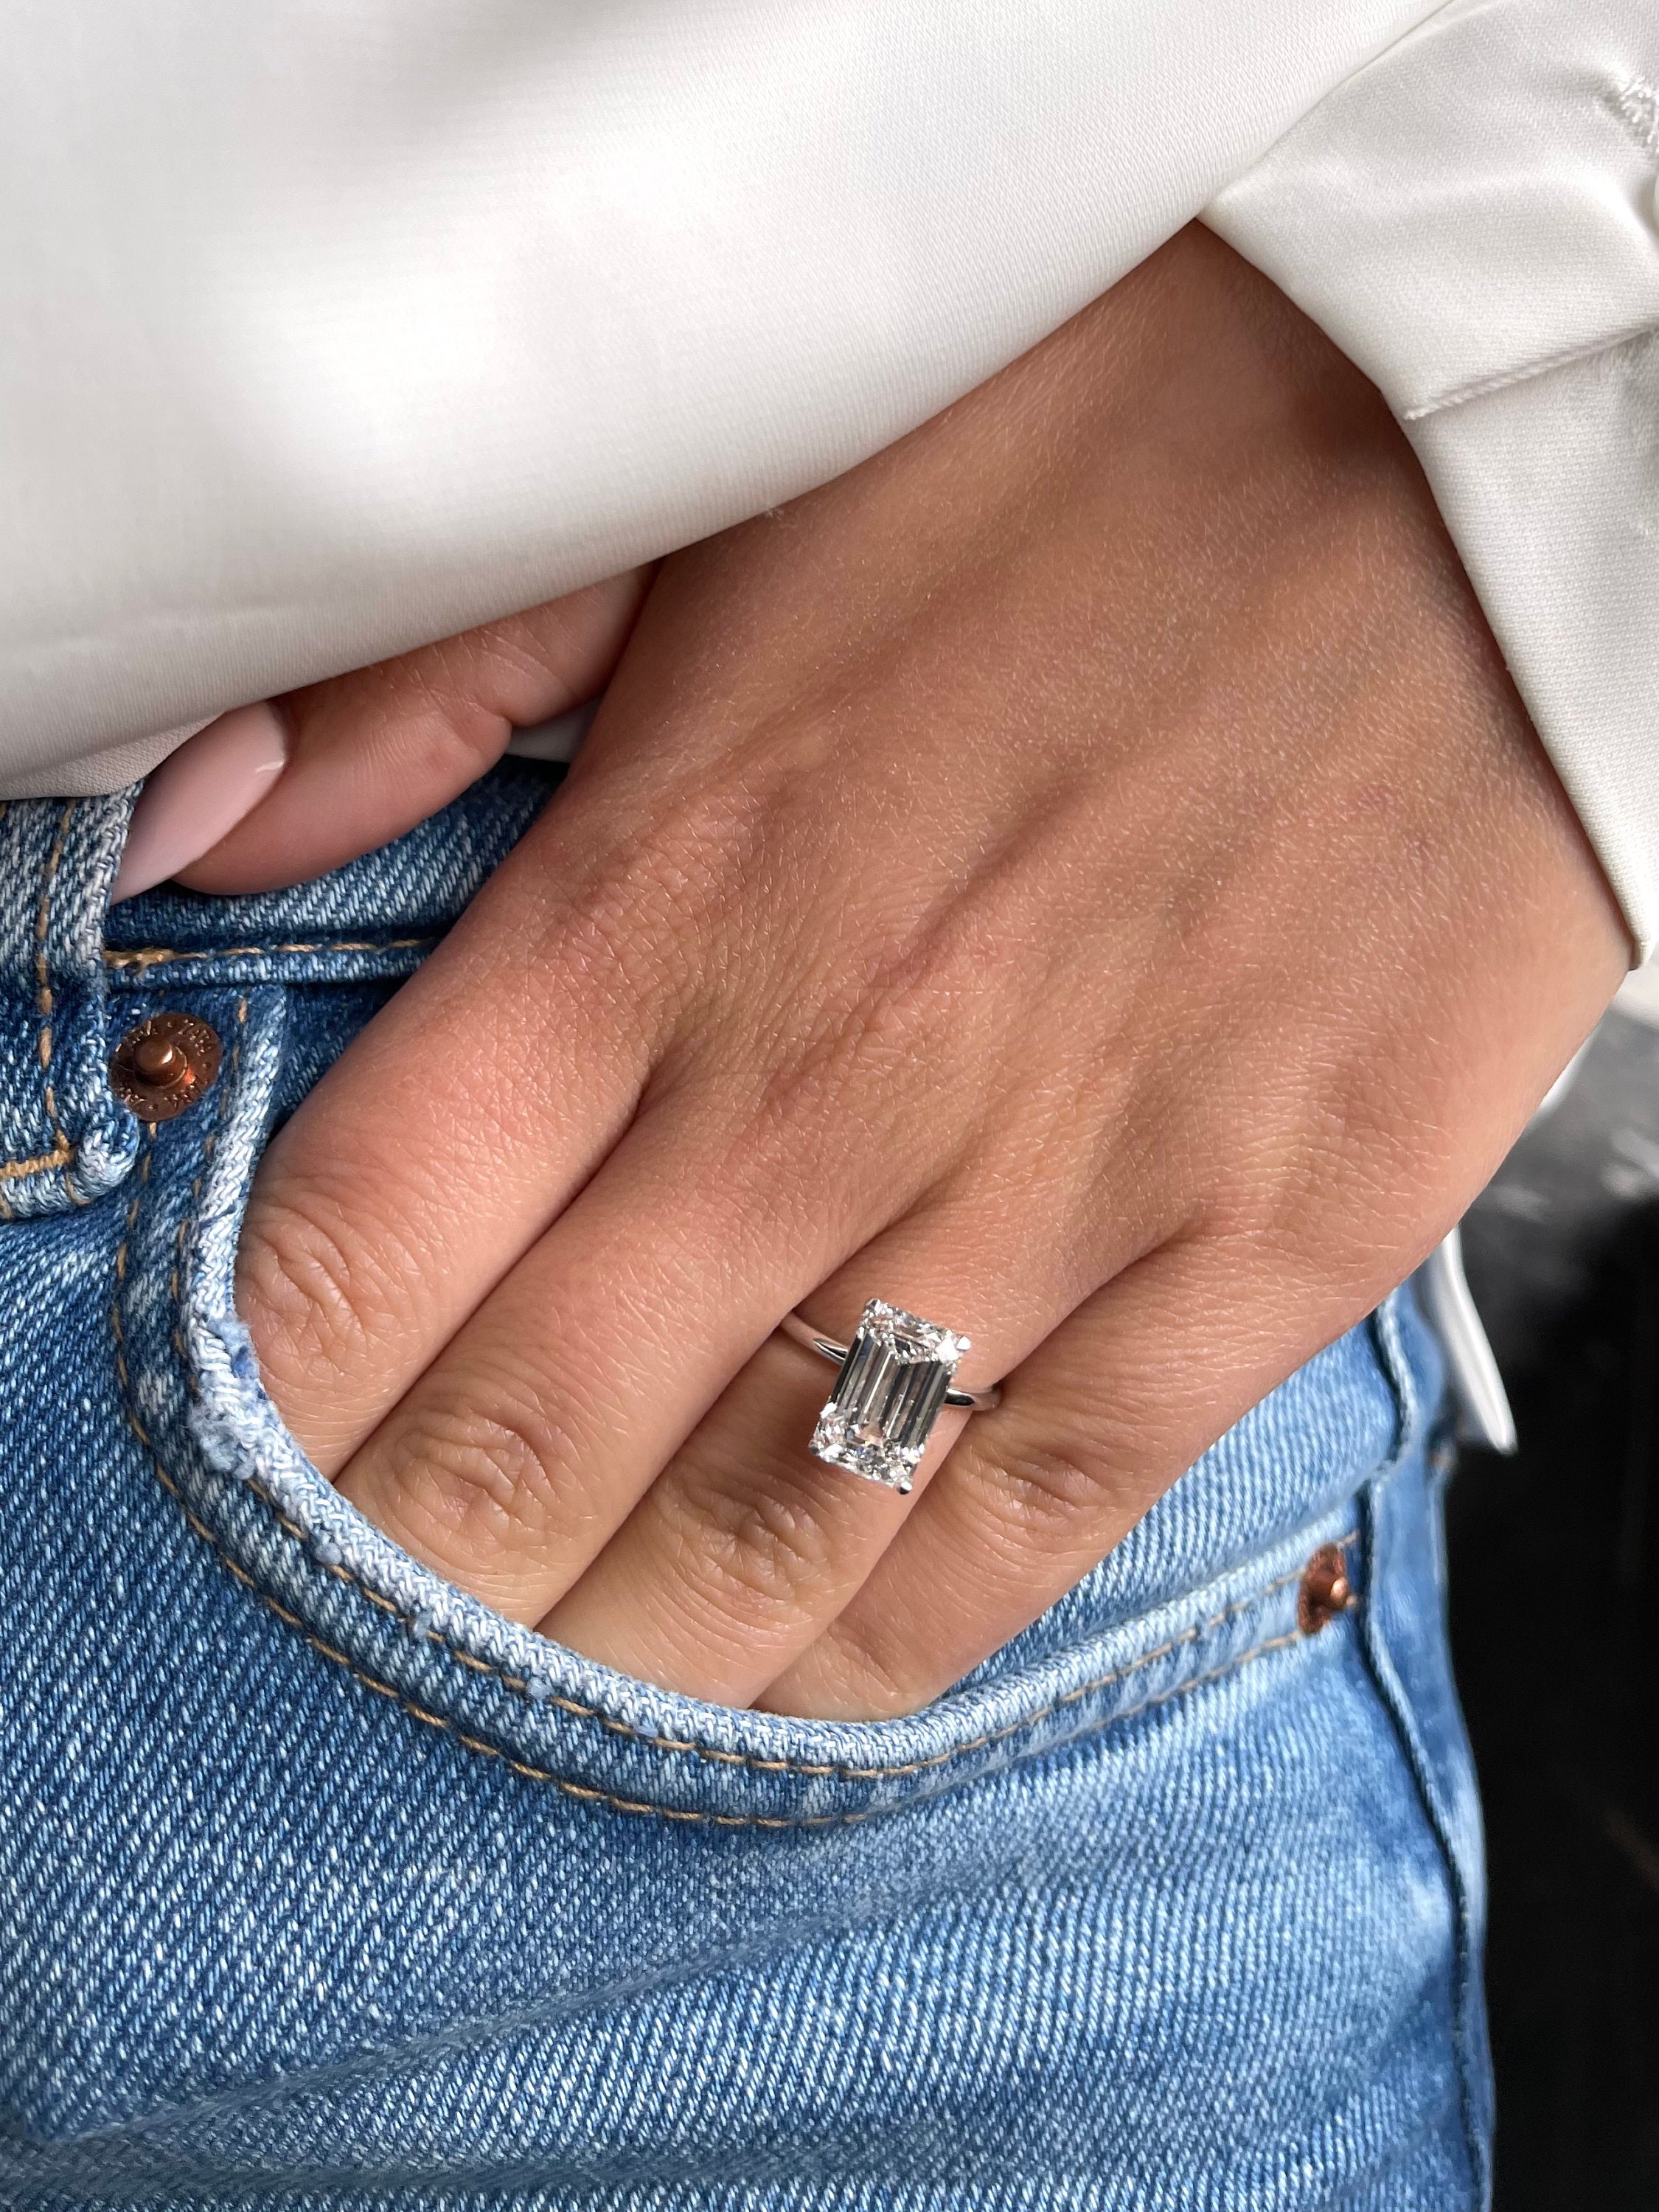 3 Carat Diamond Rings Are Extraordinary - Adiamor Blog [Video] [Video] |  Big diamond engagement rings, Expensive engagement rings, Big engagement  rings